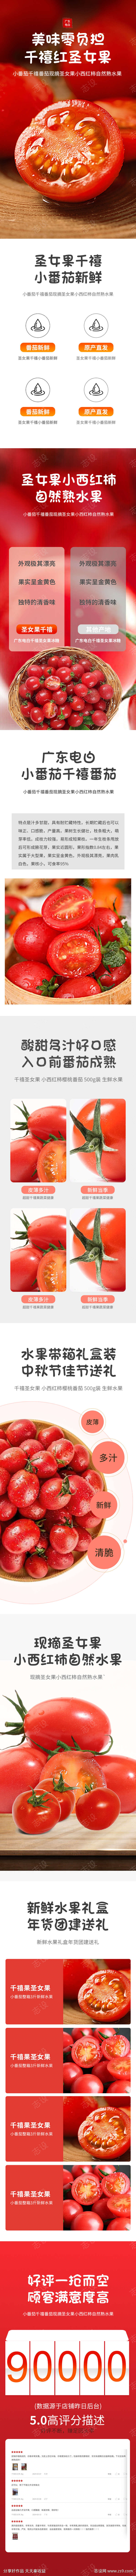 简约大气水果蔬菜番茄详情页